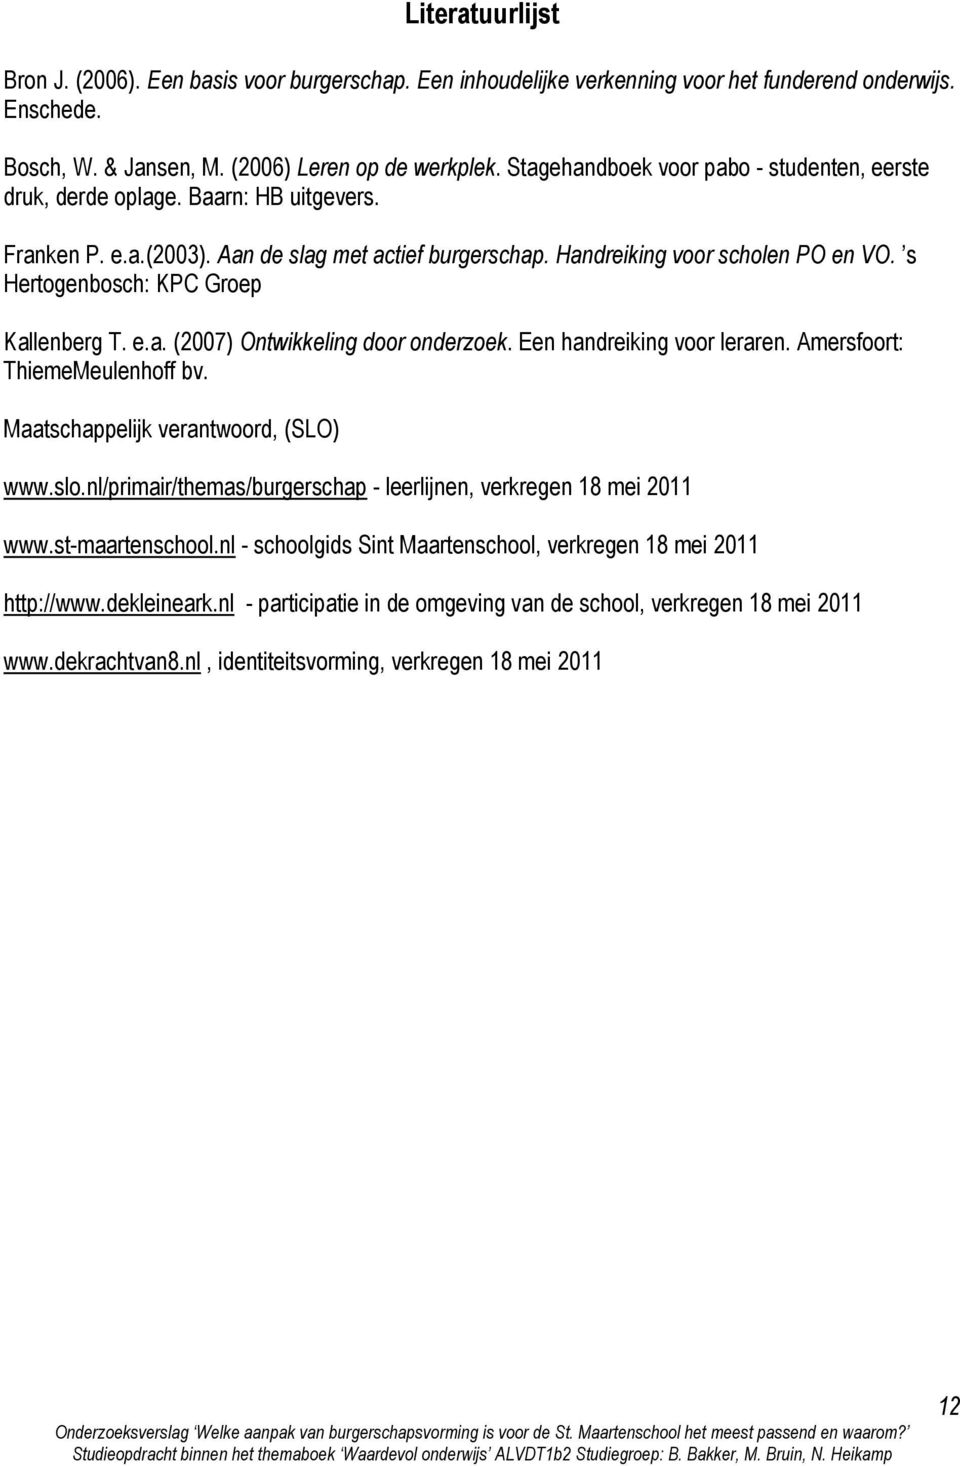 s Hertogenbosch: KPC Groep Kallenberg T. e.a. (2007) Ontwikkeling door onderzoek. Een handreiking voor leraren. Amersfoort: ThiemeMeulenhoff bv. Maatschappelijk verantwoord, (SLO) www.slo.